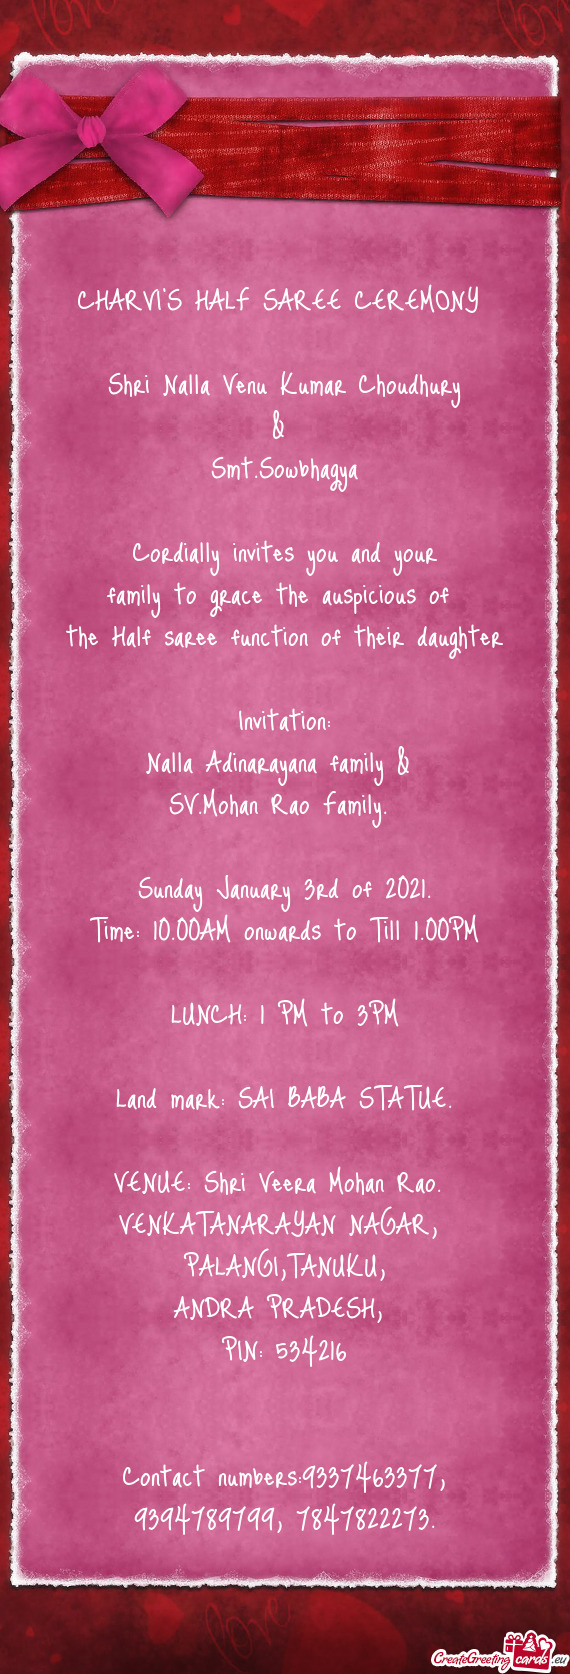 Nalla Adinarayana family & 